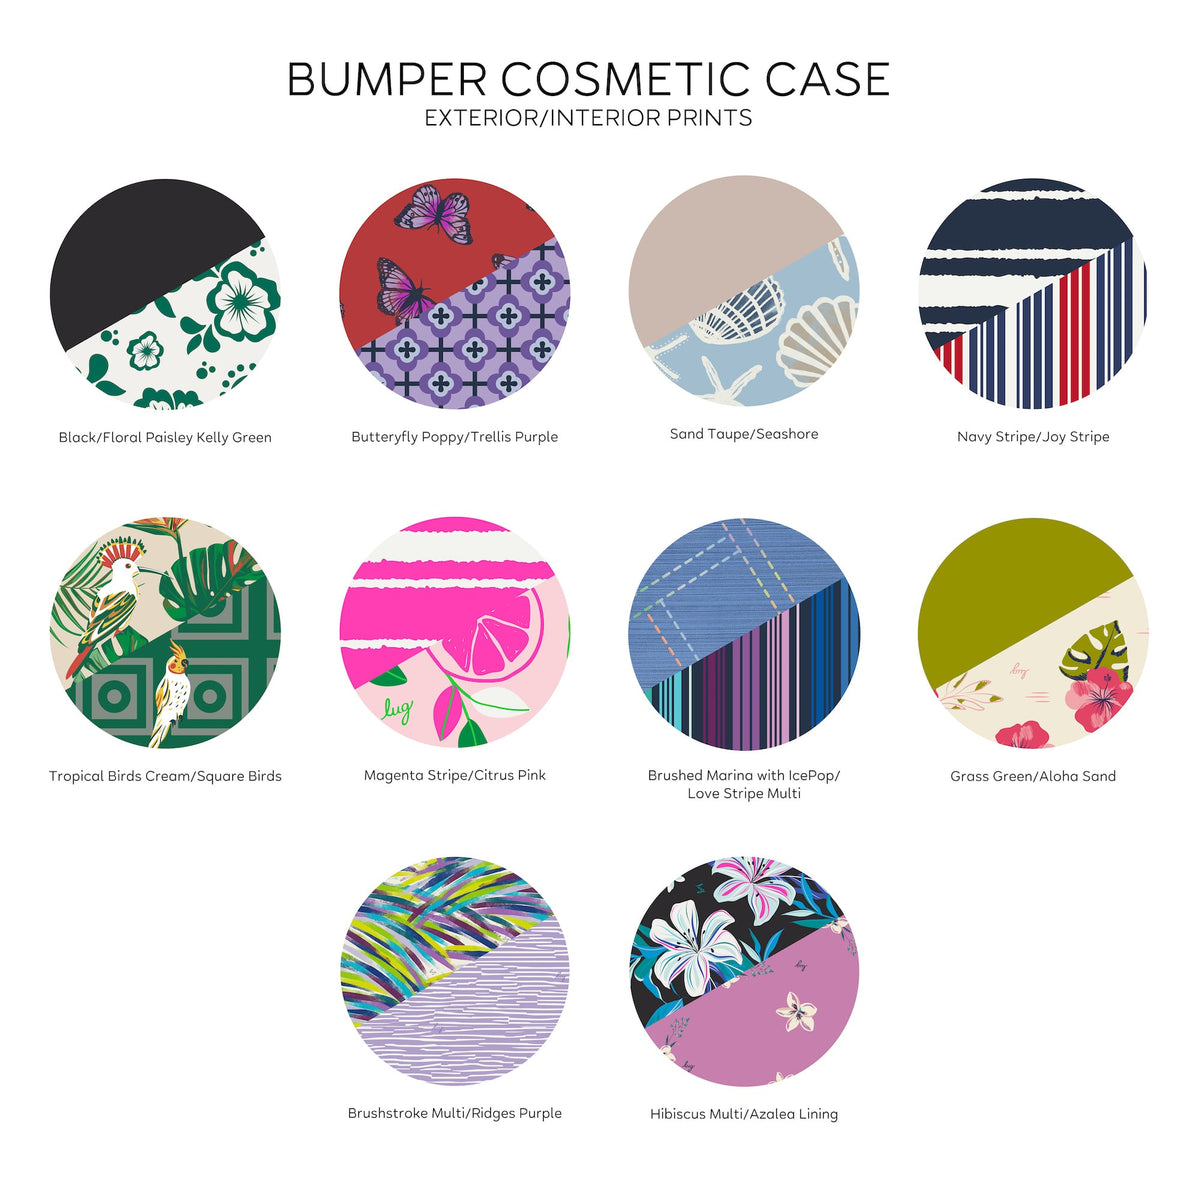 Bumper Cosmetic Case